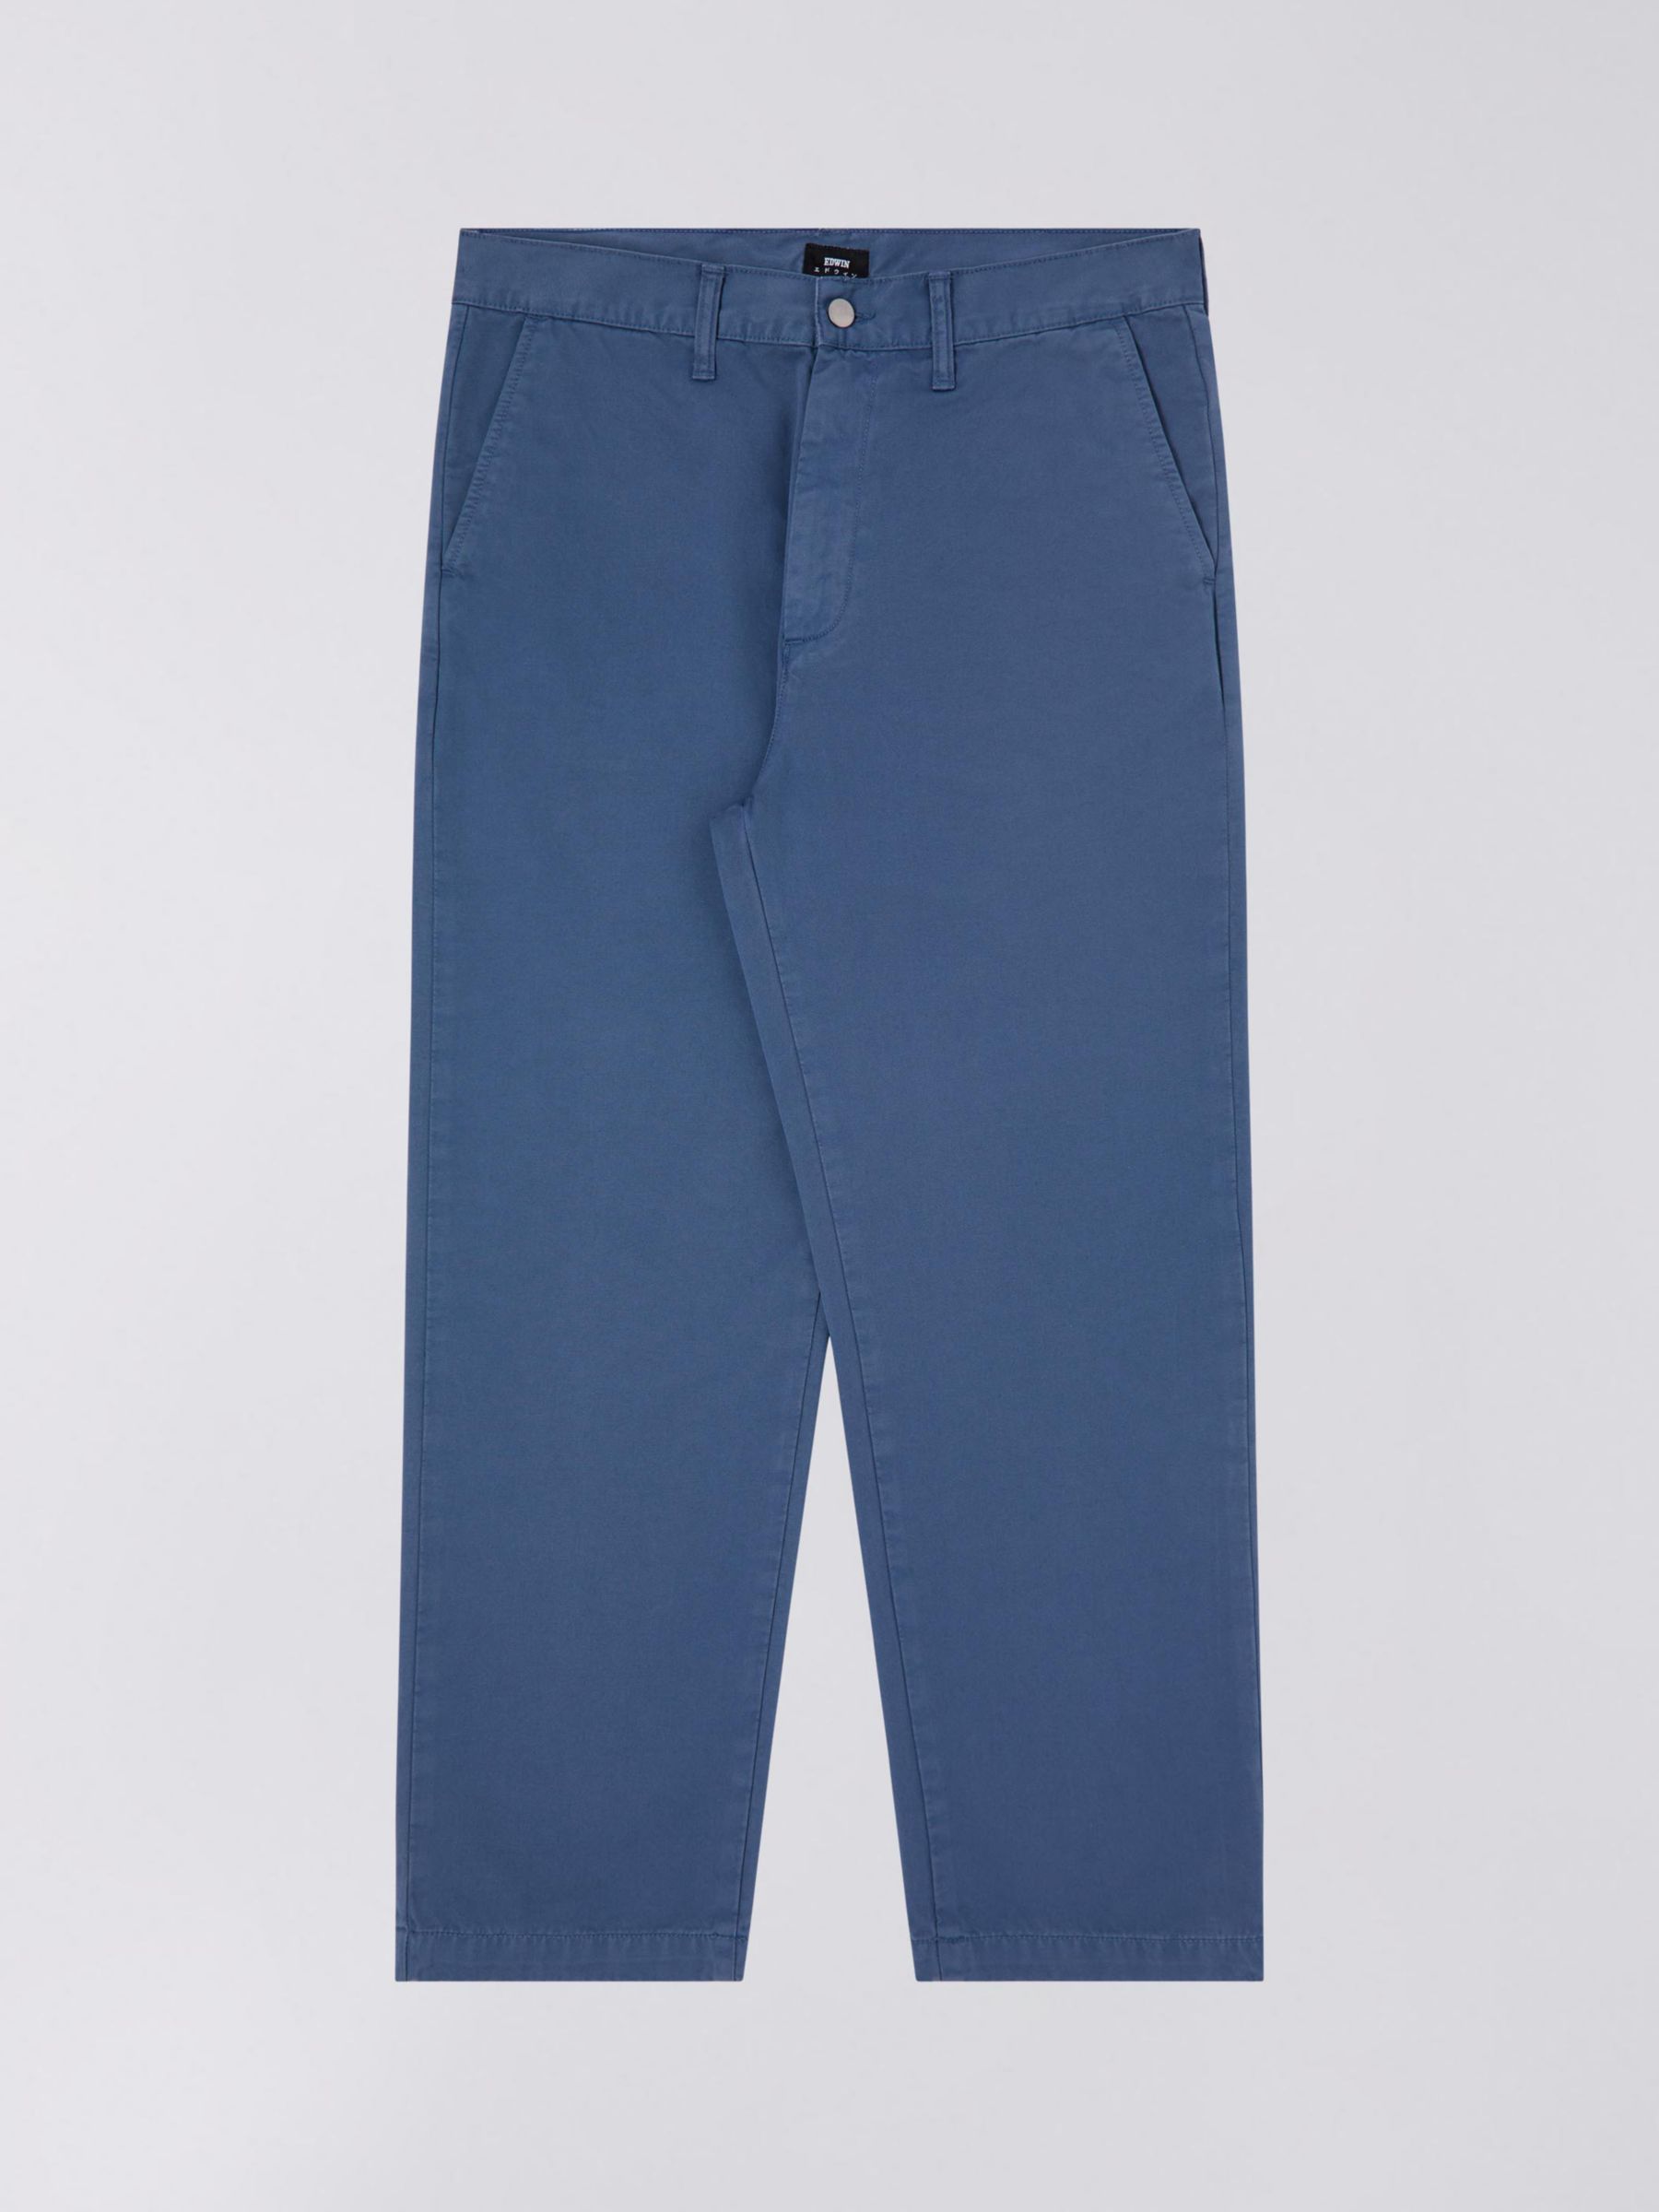 Edwin Edwin Jaga Loose Trousers, Blue, 38R